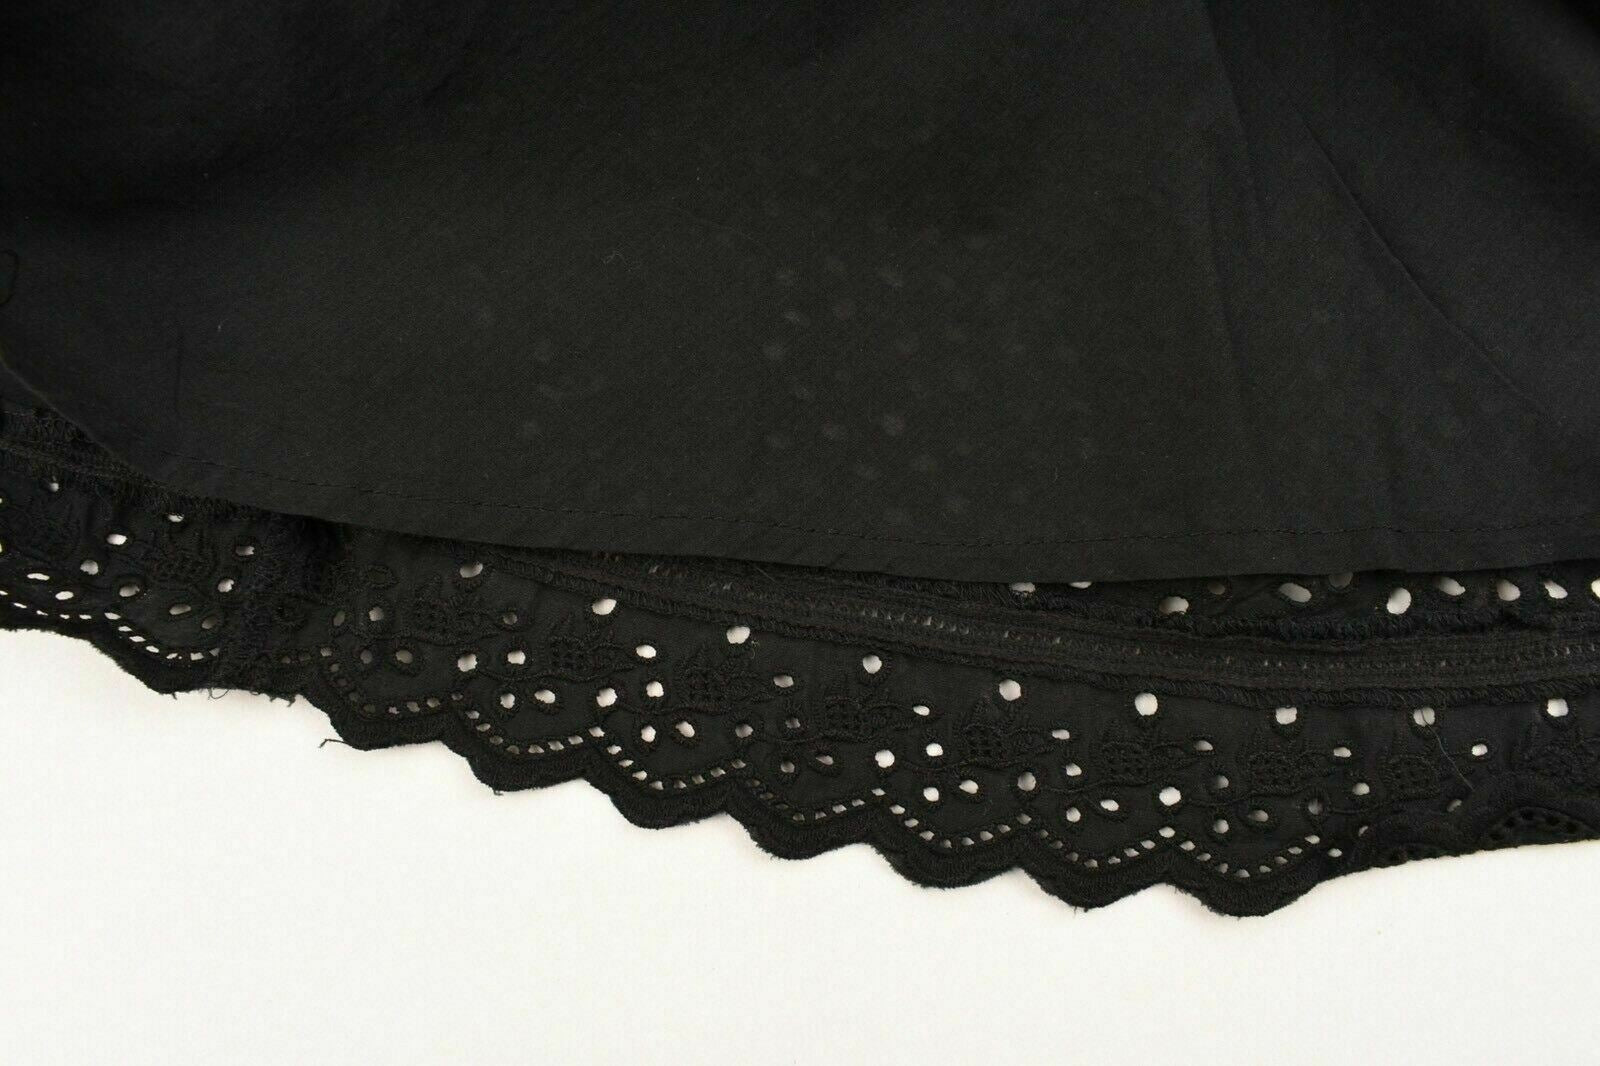 LAUREN RALPH LAUREN Women's Embroidered A-Line Skirt, Black, size XS /size XL